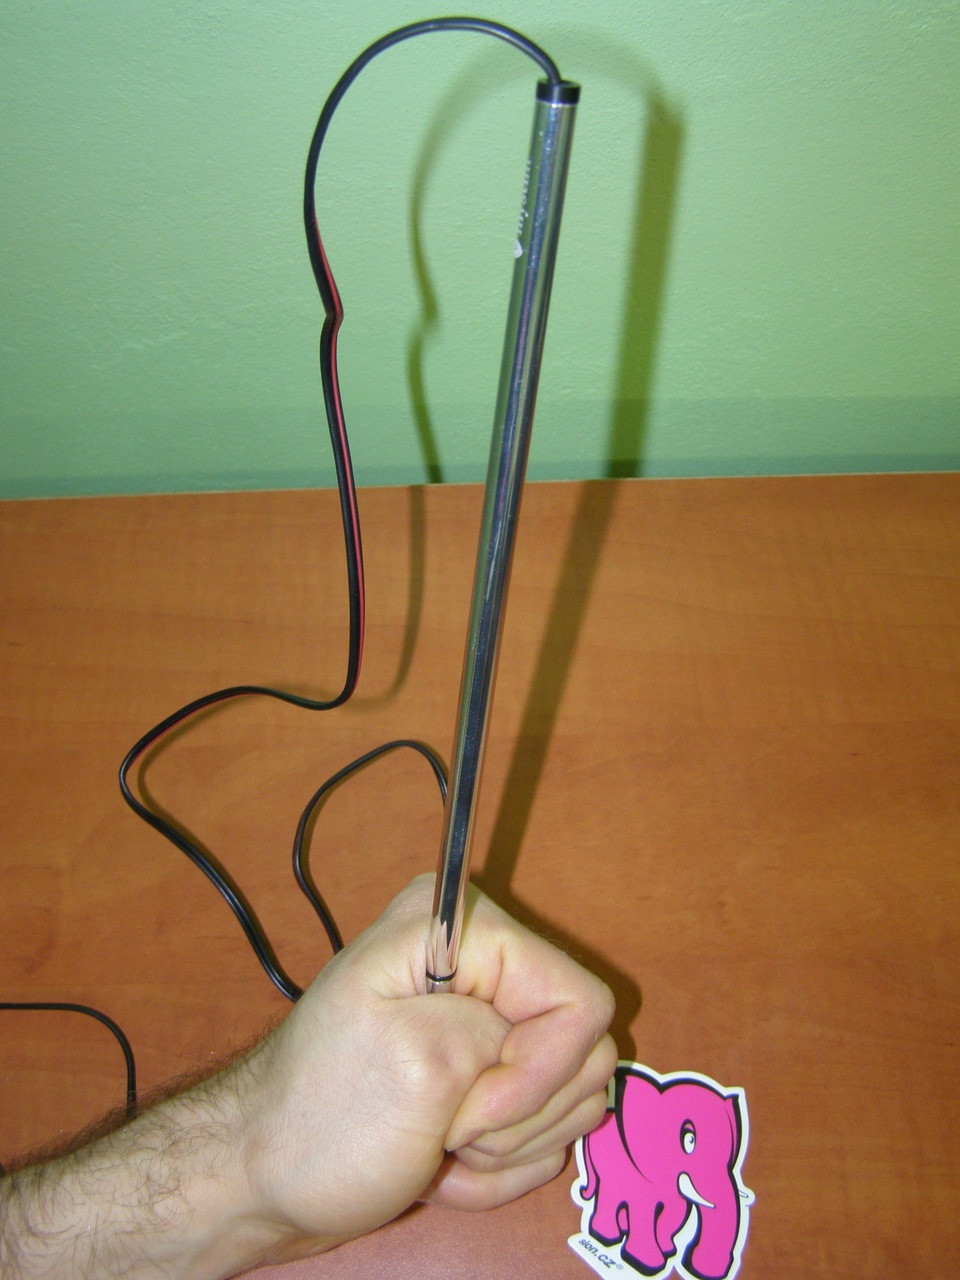 Vékony Finn - electrosex a húgycsőhöz 0,8 cm